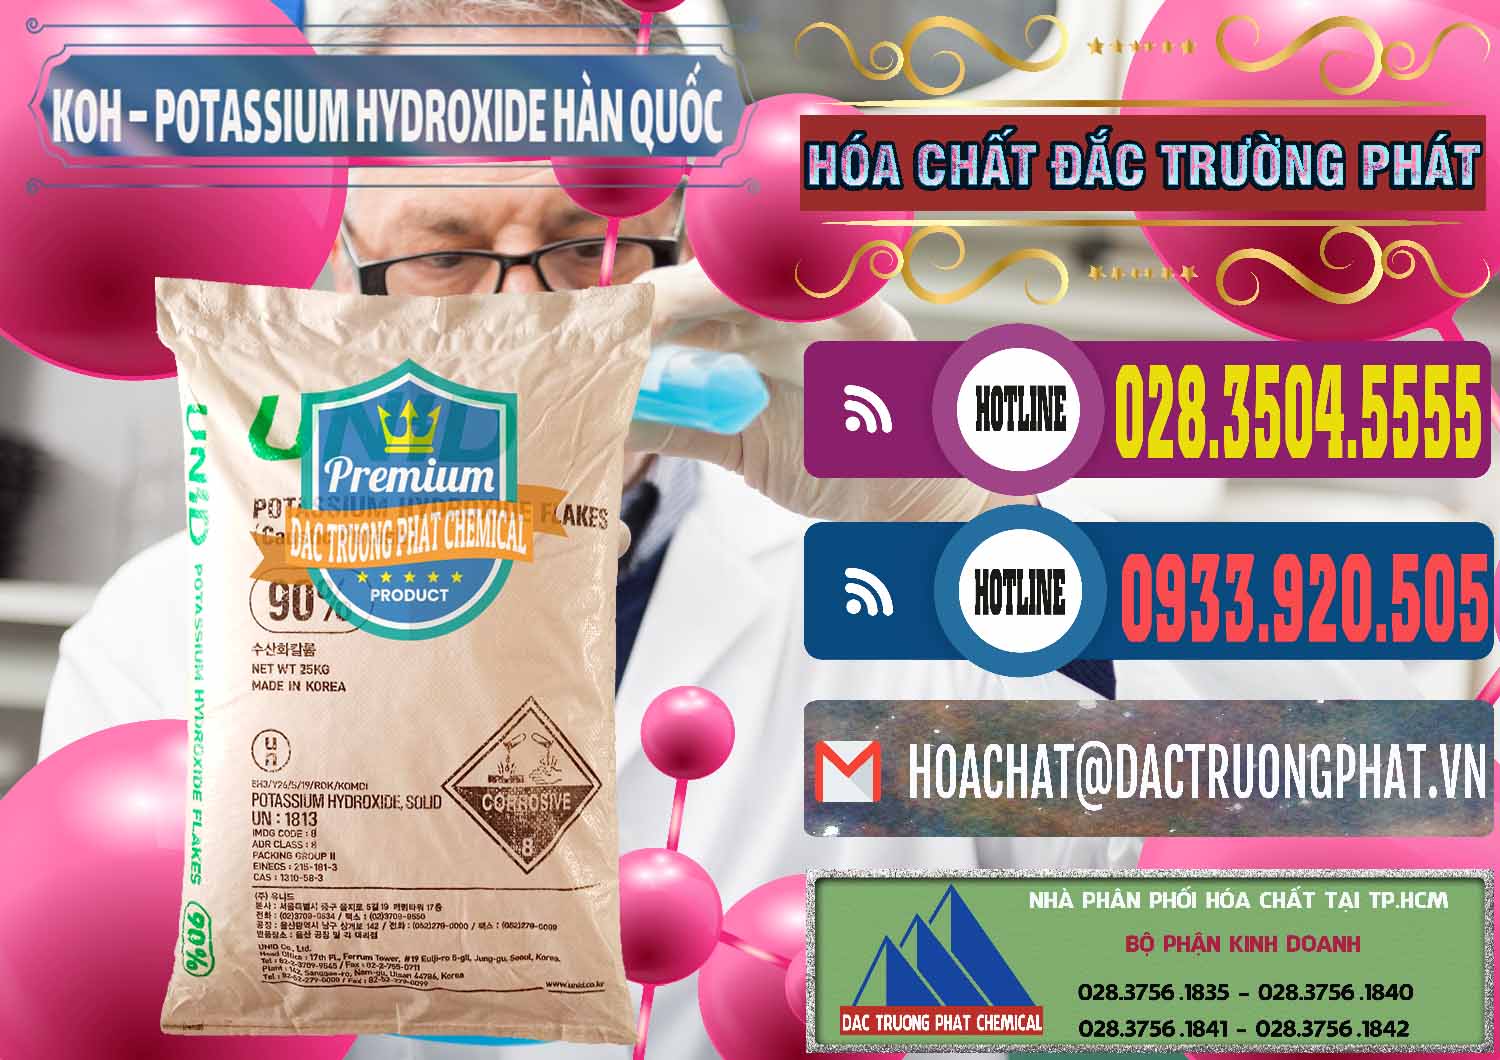 Cty chuyên bán ( cung ứng ) KOH ( 90%) – Potassium Hydroxide Unid Hàn Quốc Korea - 0090 - Nơi chuyên phân phối ( bán ) hóa chất tại TP.HCM - muabanhoachat.com.vn